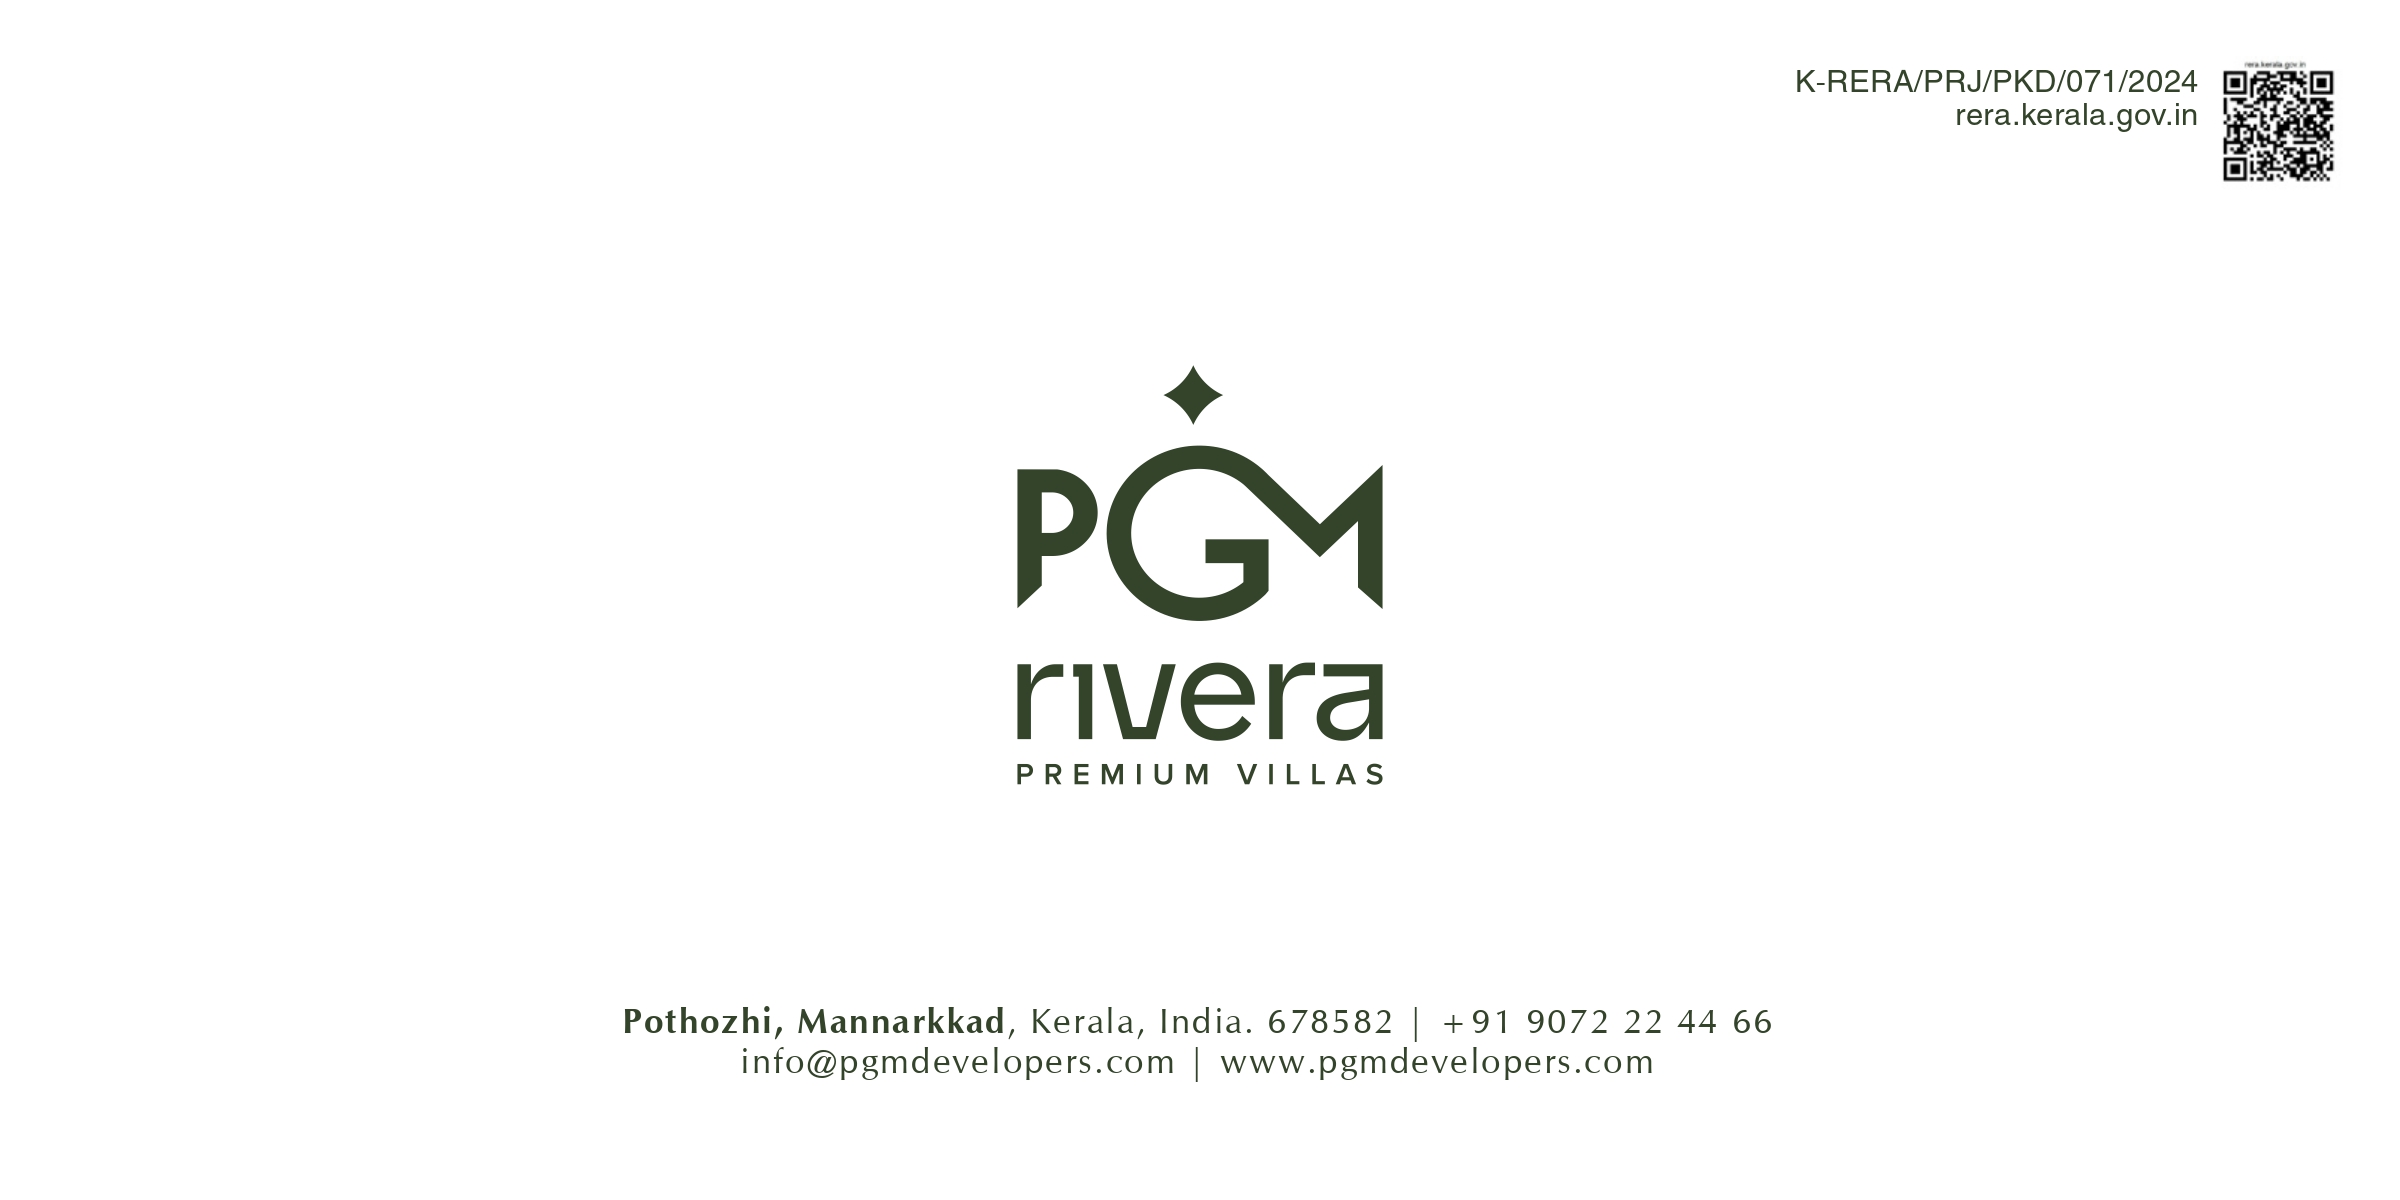 PGM Rivera